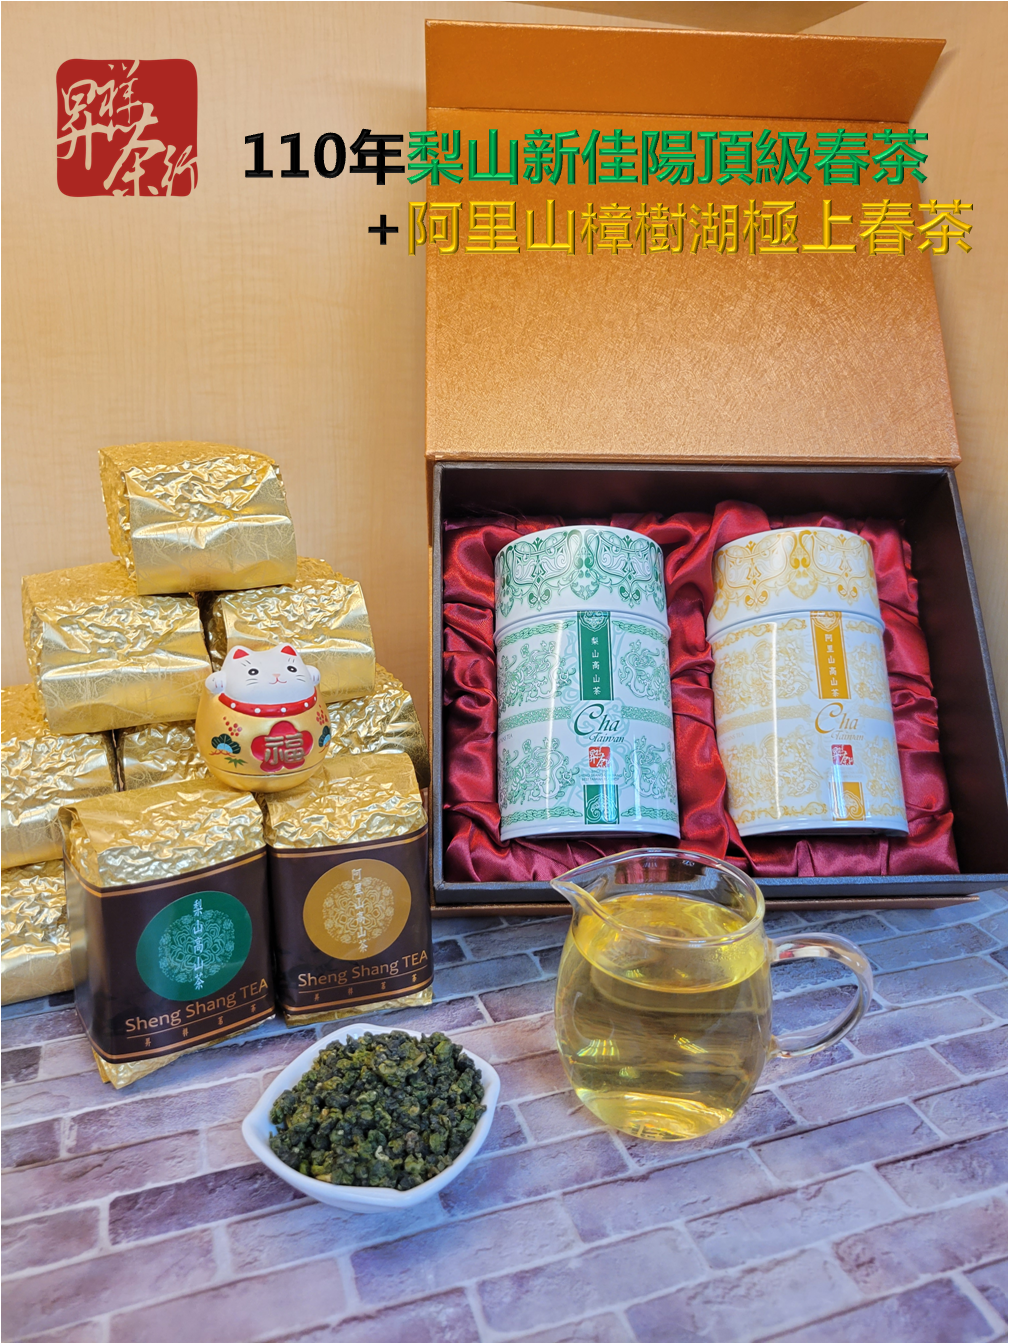 【昇祥】高山茶禮盒(阿里山春茶+梨山春茶)(茶葉/台灣茶)